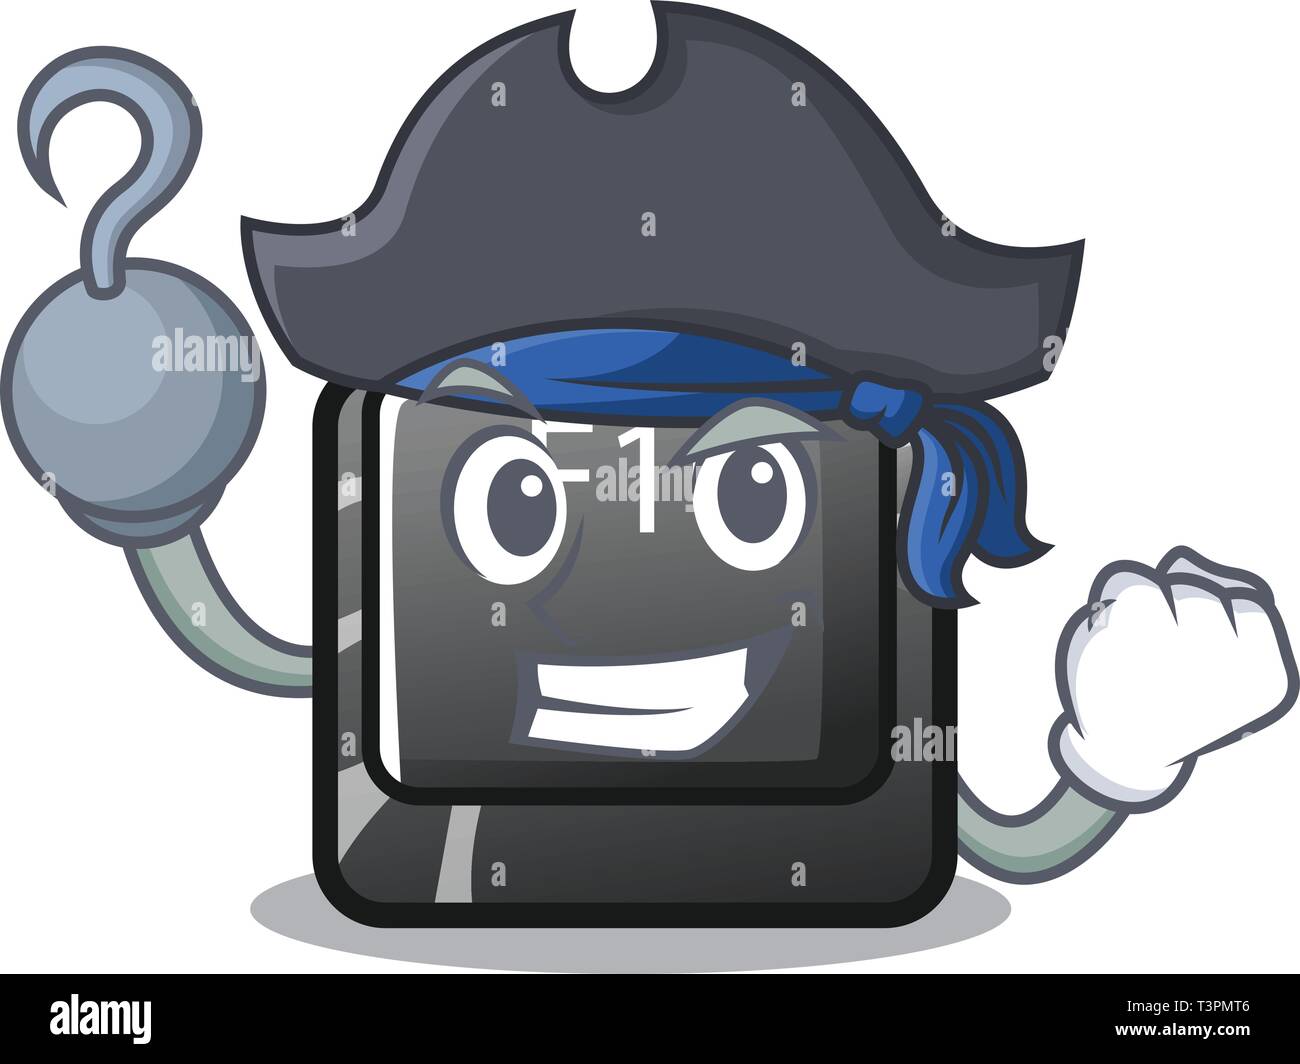 Bouton Pirate f10 Dans la Mascot forme Illustration de Vecteur